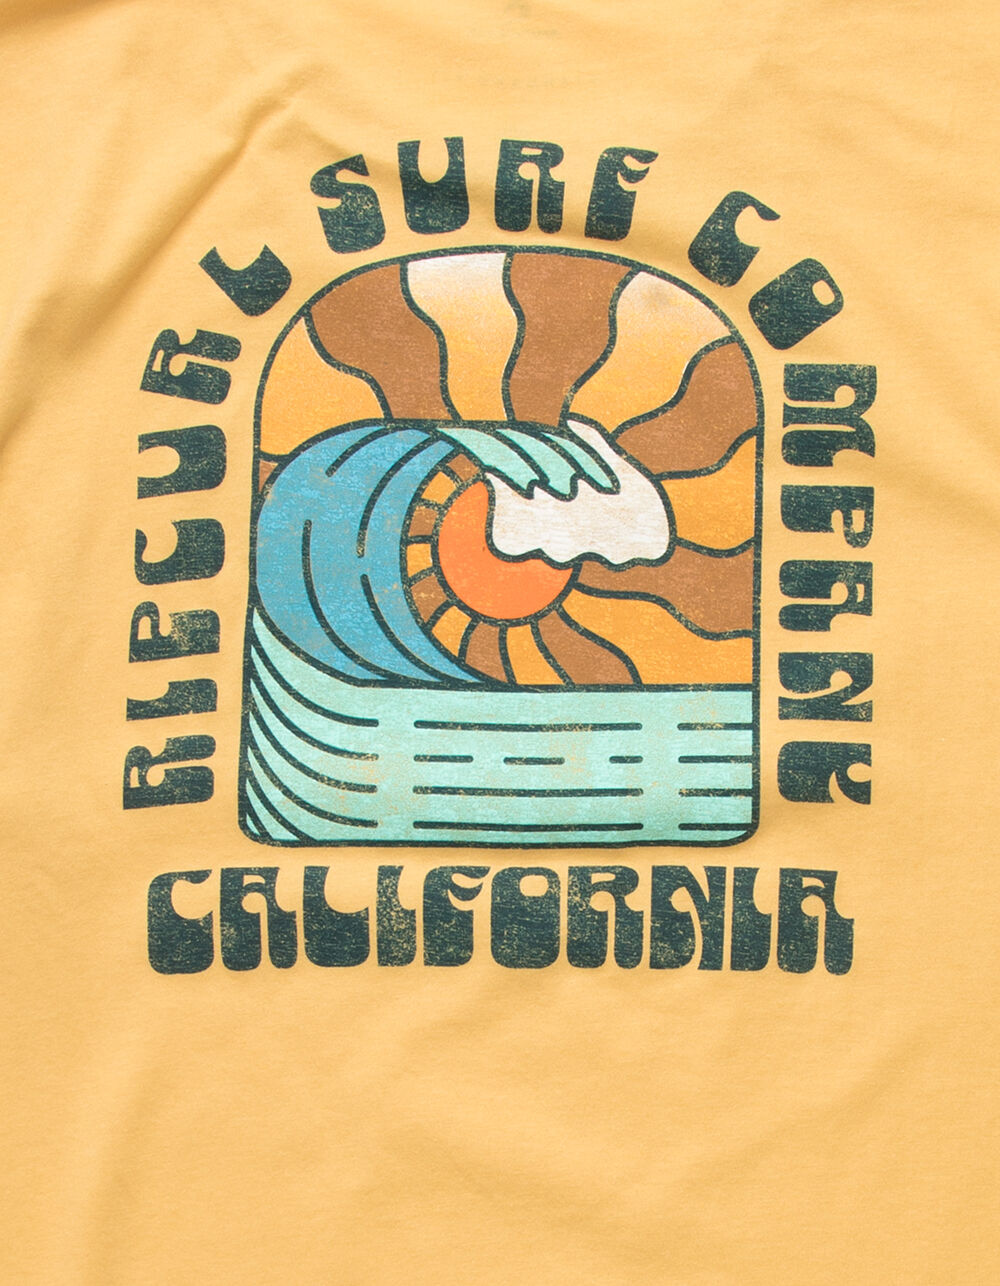 RIP CURL Cali Peeler Premium Mens T-Shirt - MUSTA | Tillys